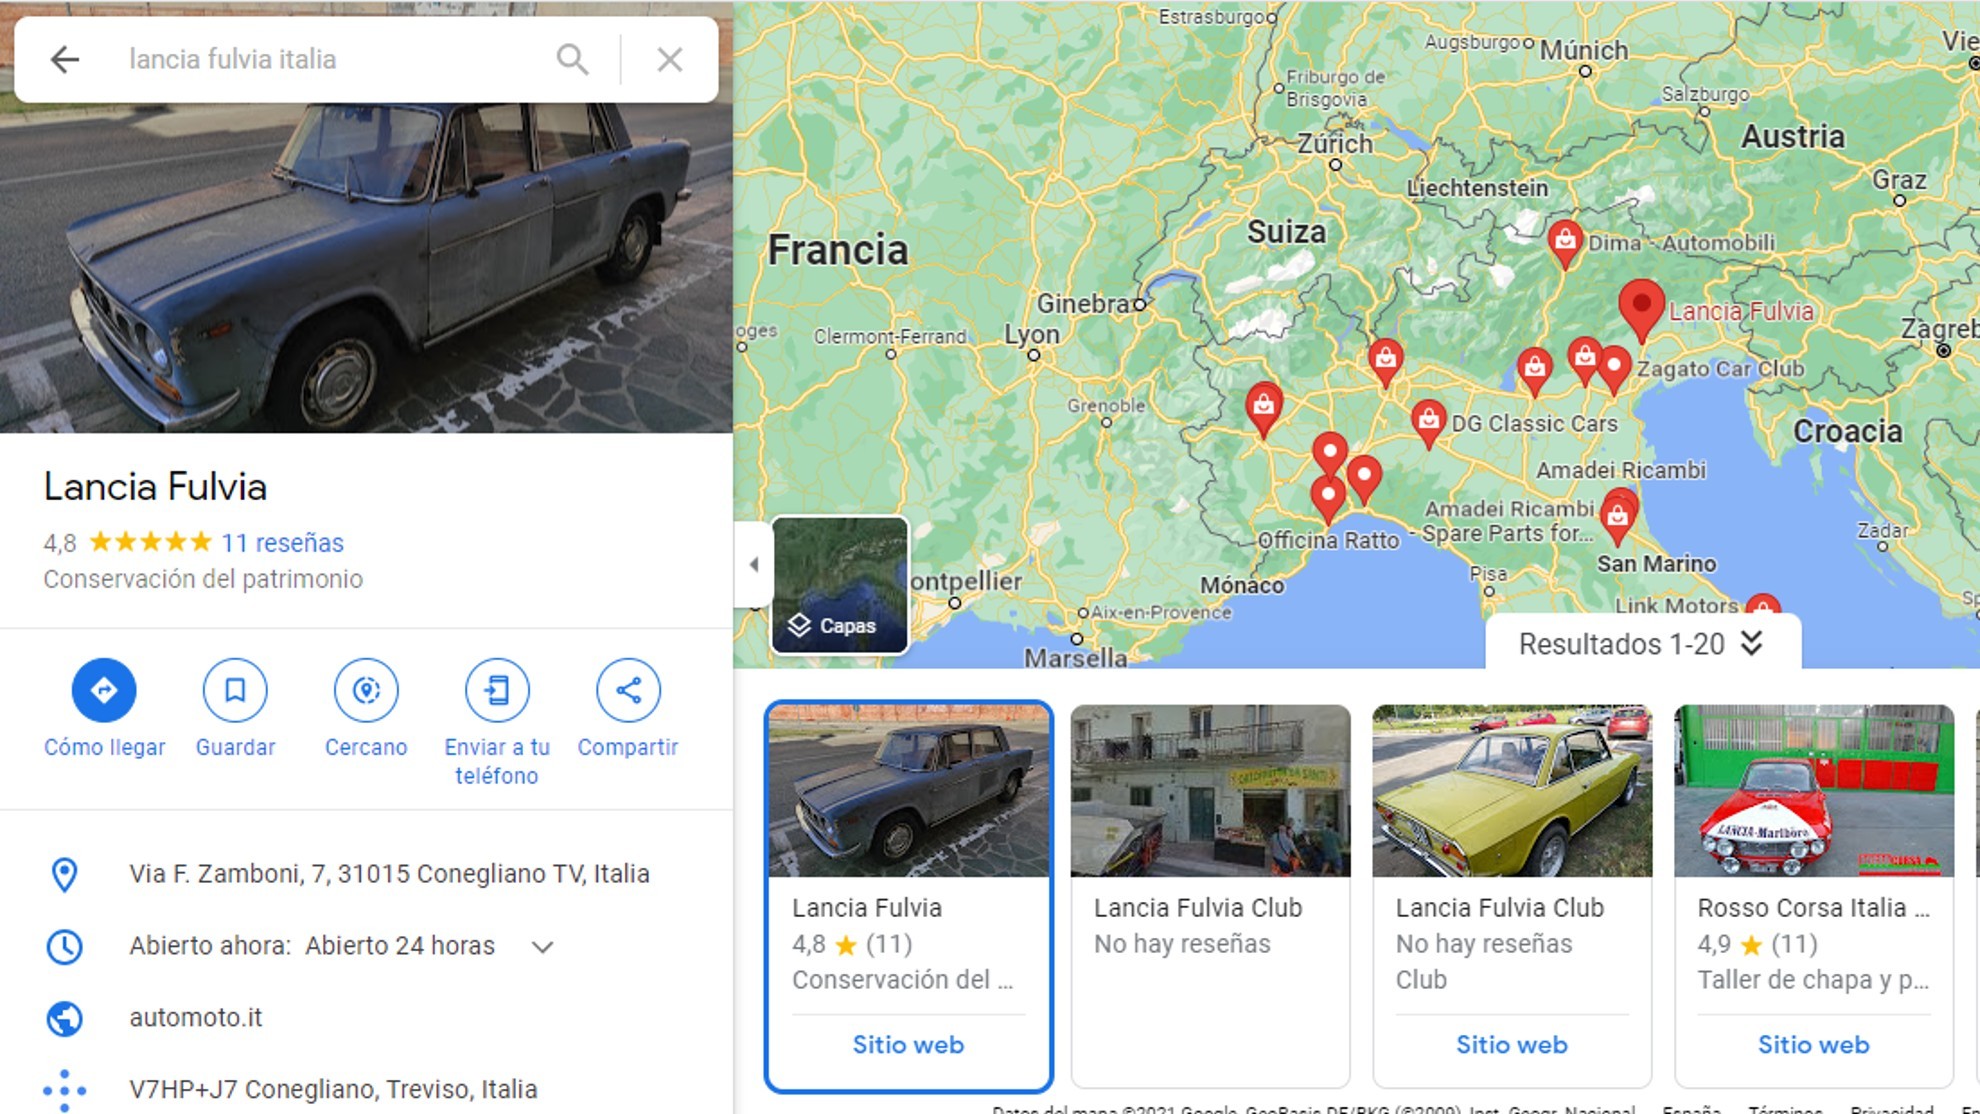 Lancia Fulvia - Conegliano - Google Maps - 47 aos en el mismo sitio - Angelo Fregolent - restaurado